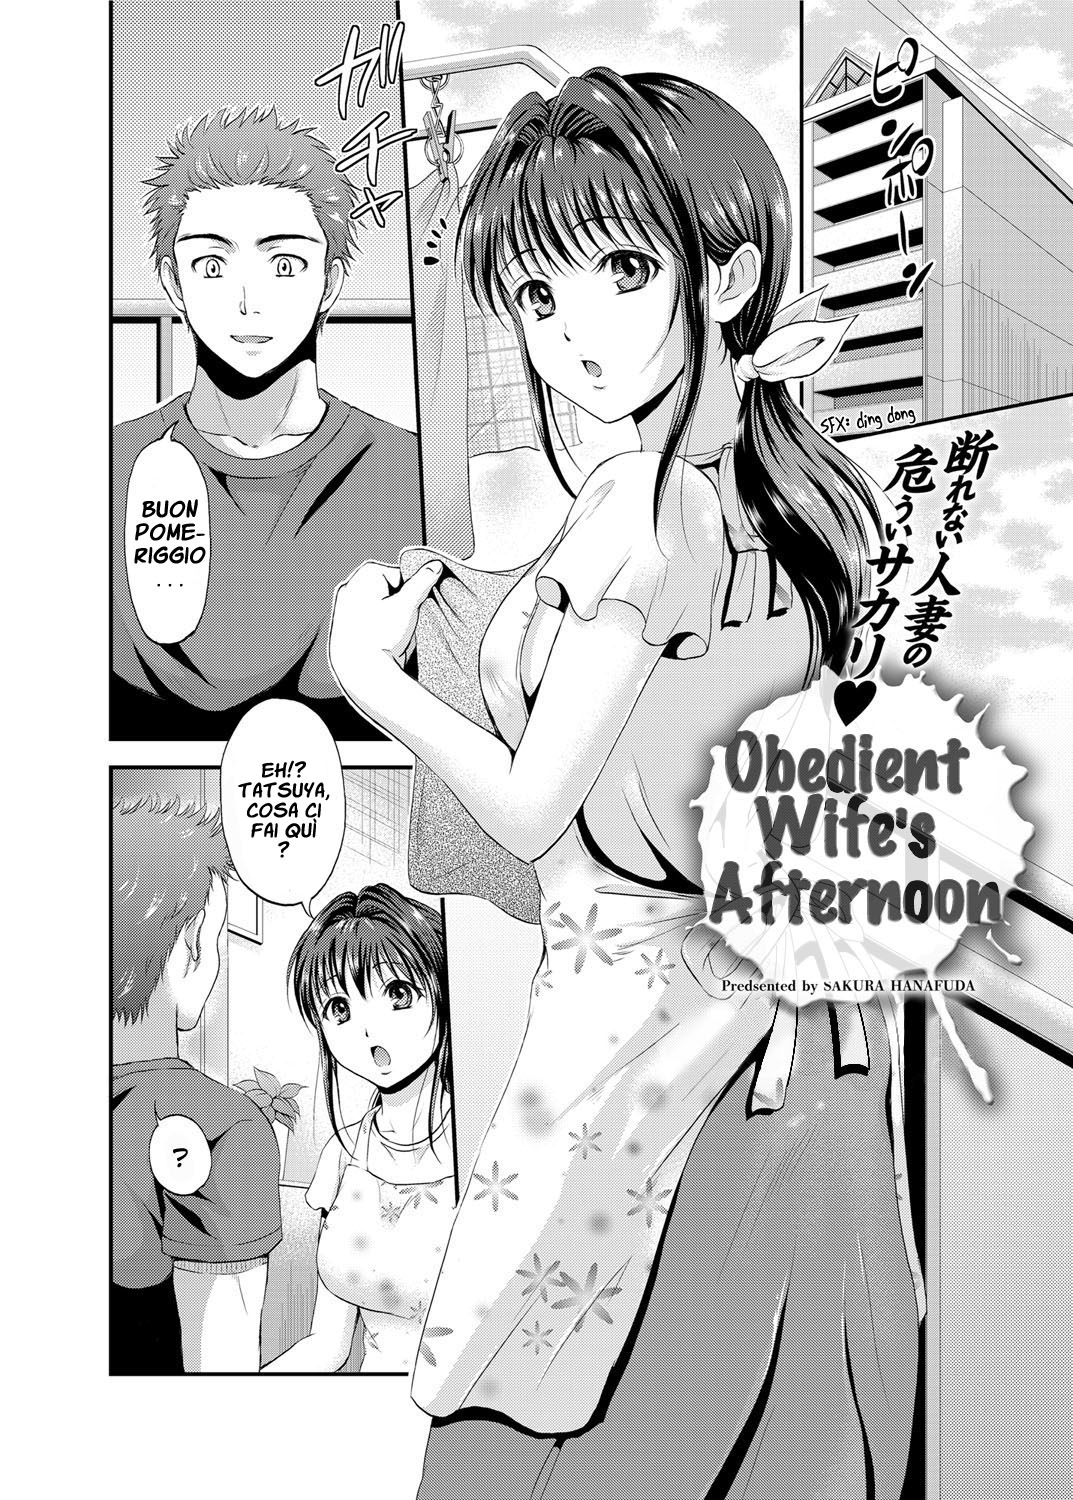 [Sakura Hanafuda] The Obedient Wife's Afternoon - italian 